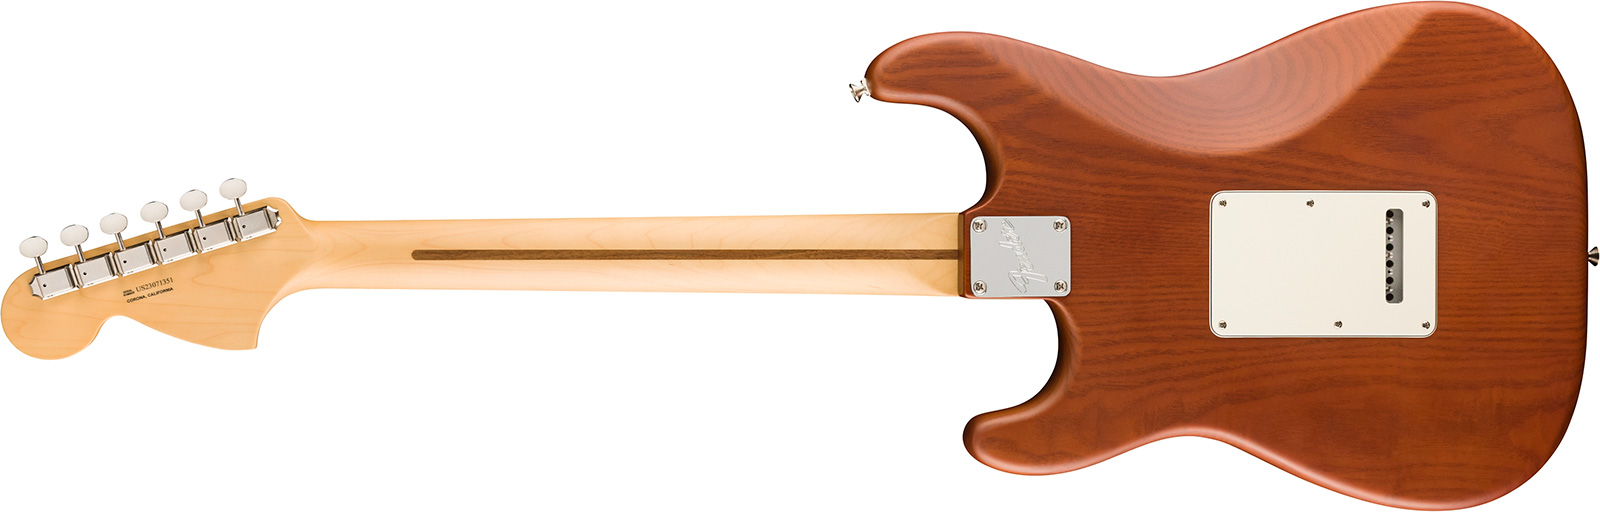 Fender Strat American Timber Performer Fsr Ltd Usa 3s Rw - Mocha - Elektrische gitaar in Str-vorm - Variation 1